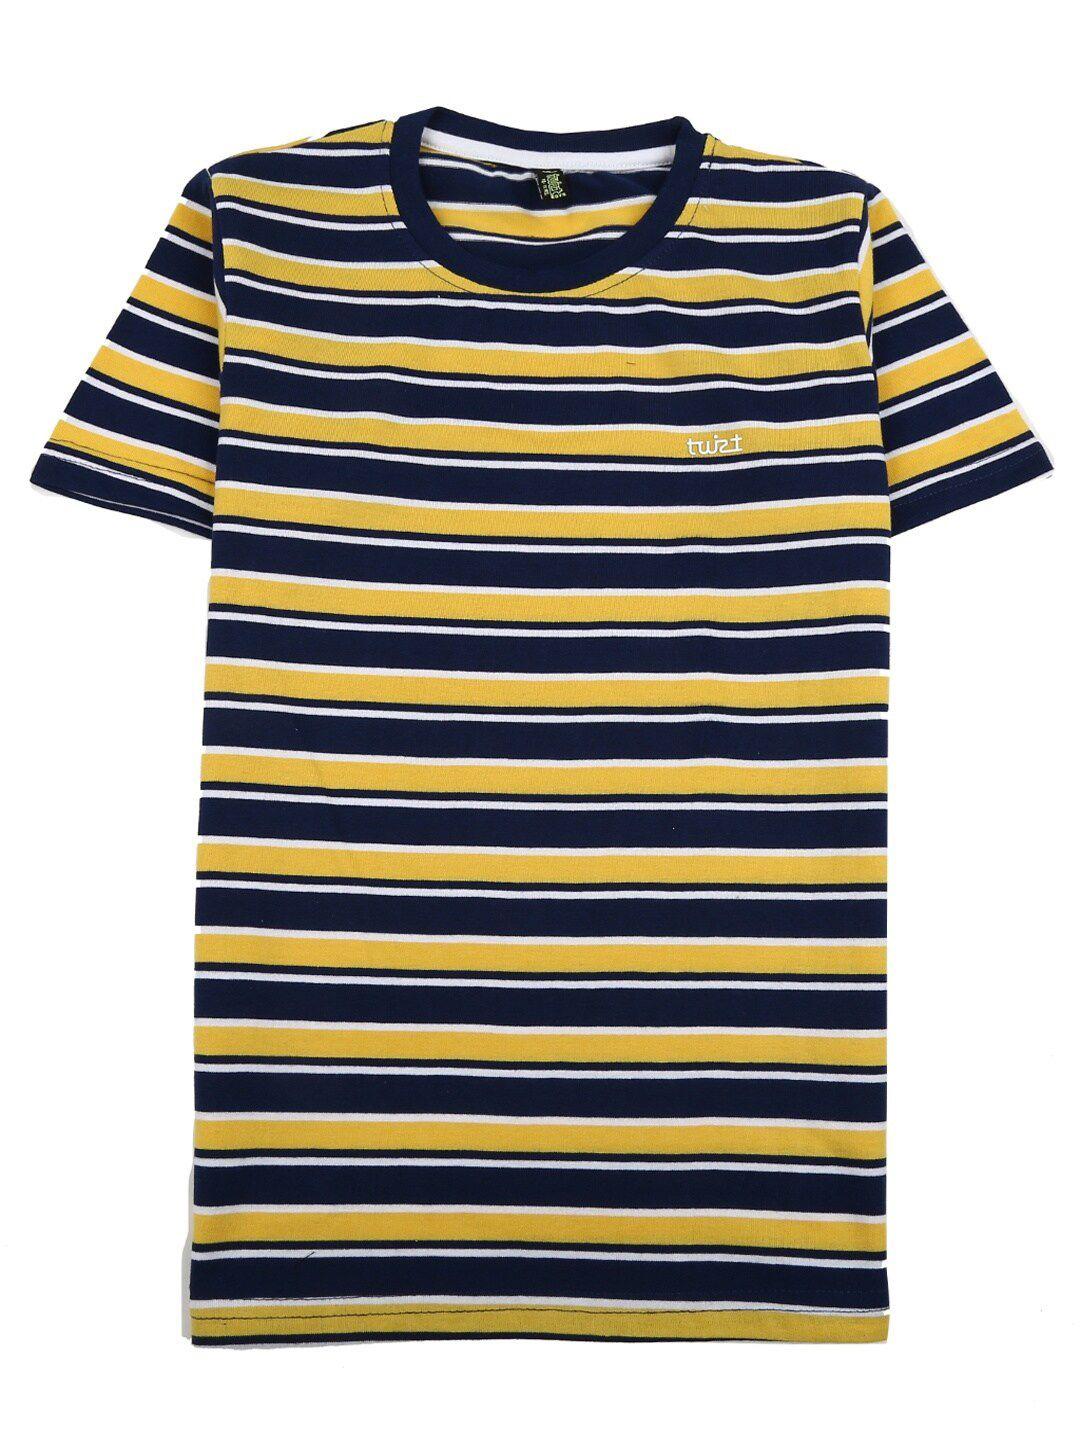 v-mart boys yellow & navy blue striped cotton t-shirt